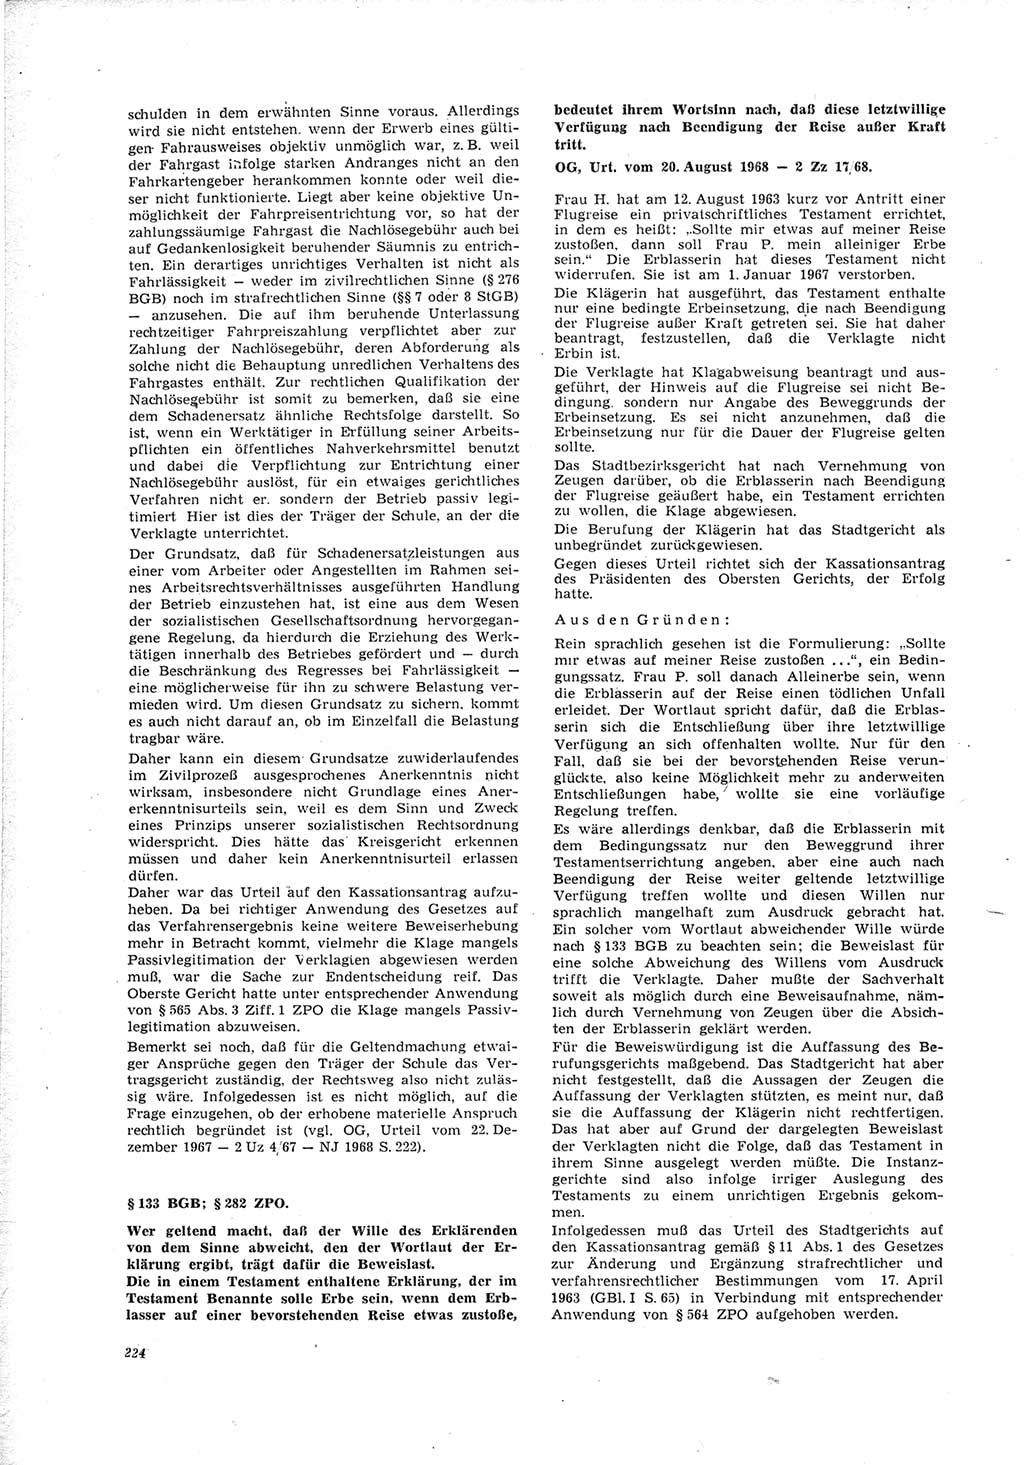 Neue Justiz (NJ), Zeitschrift für Recht und Rechtswissenschaft [Deutsche Demokratische Republik (DDR)], 23. Jahrgang 1969, Seite 224 (NJ DDR 1969, S. 224)